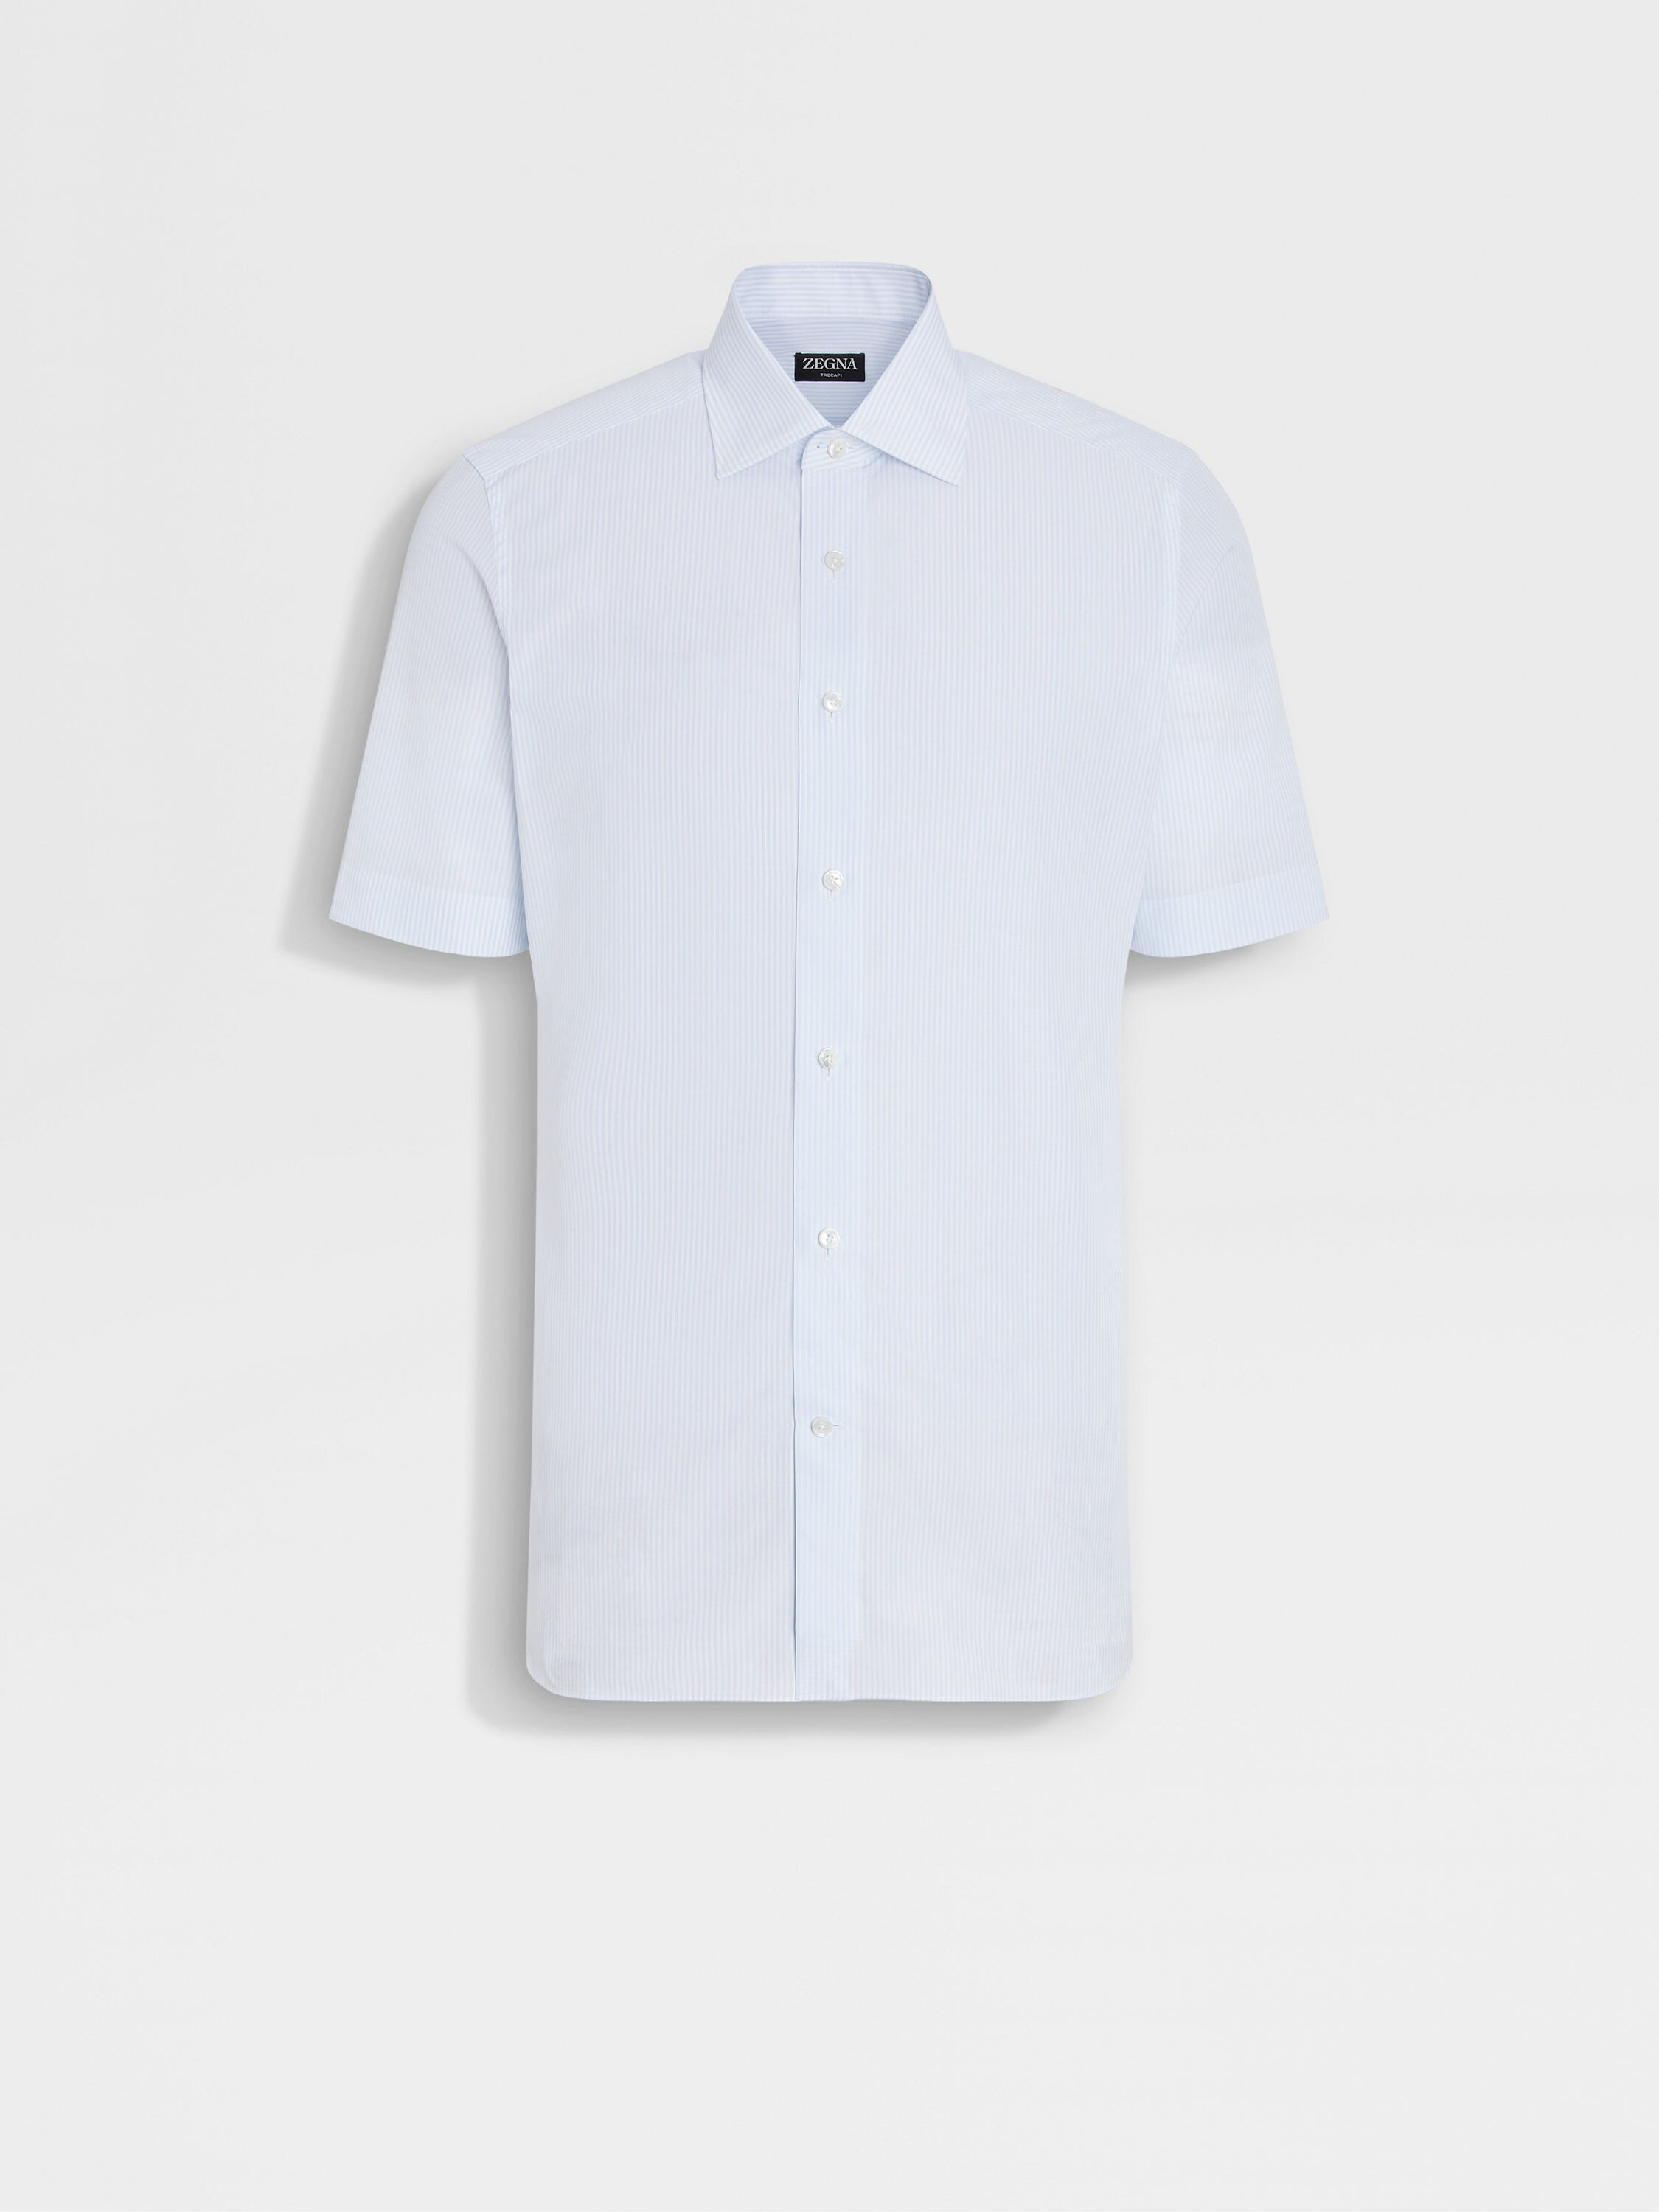 Light Blue and White Striped Trecapi Cotton Shirt